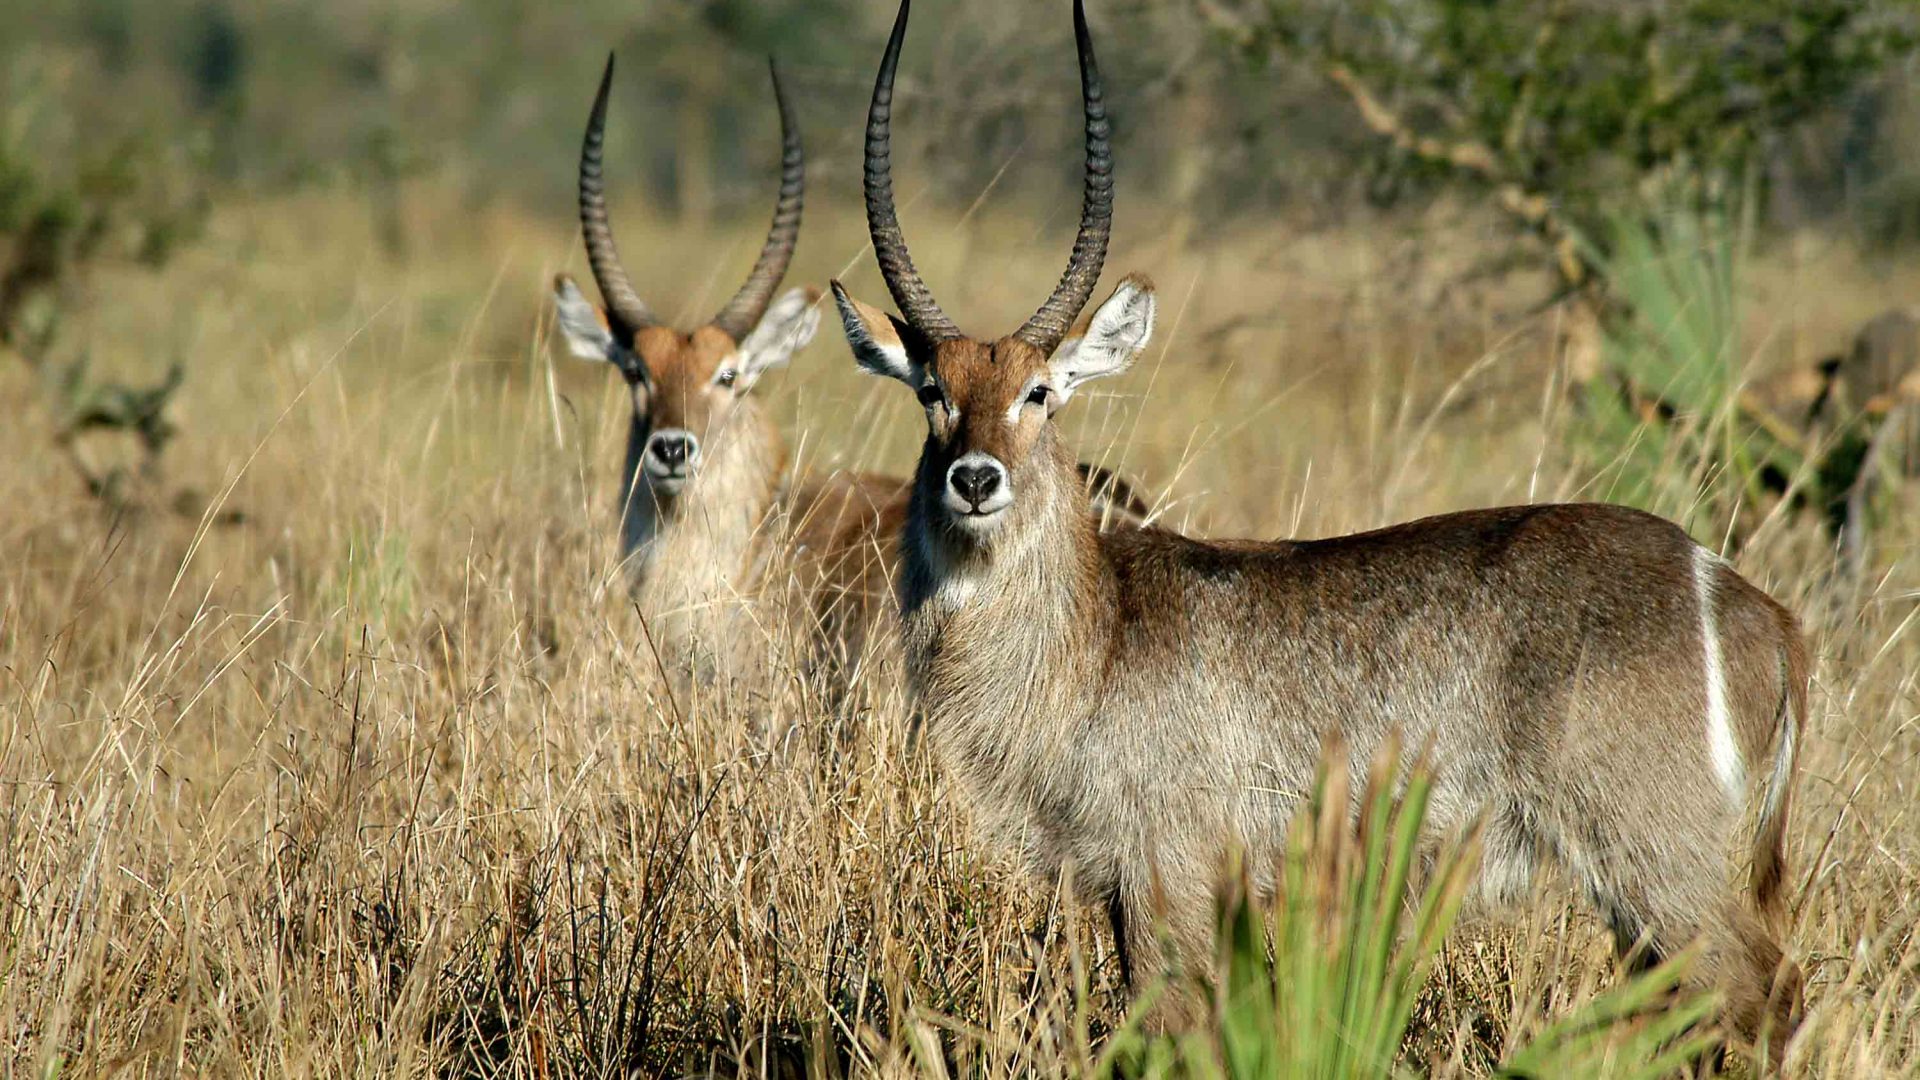 Wildlife is abundant at Liwonde National Park, Malawi.